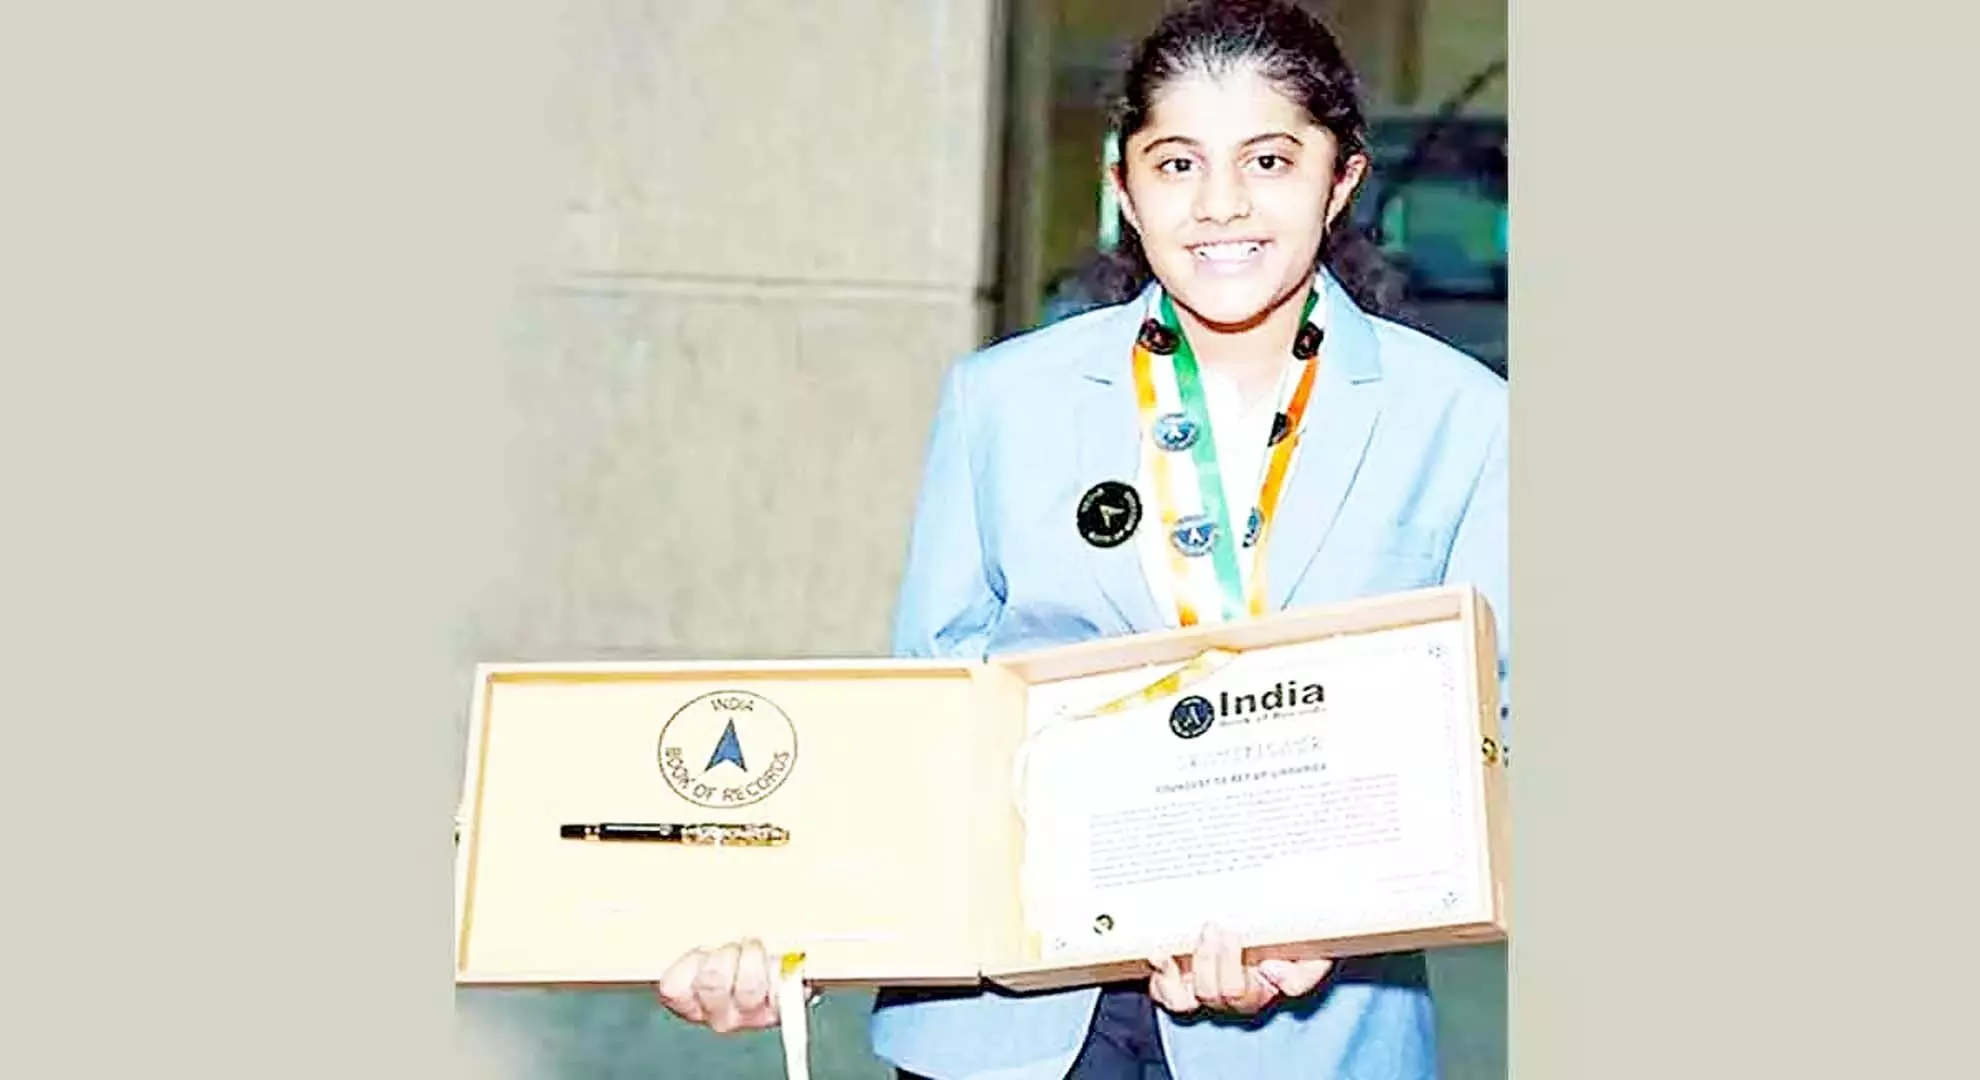 हैदराबाद: शहर की लड़की आकर्षणा का नाम इंडिया बुक ऑफ रिकॉर्ड्स में दर्ज हुआ